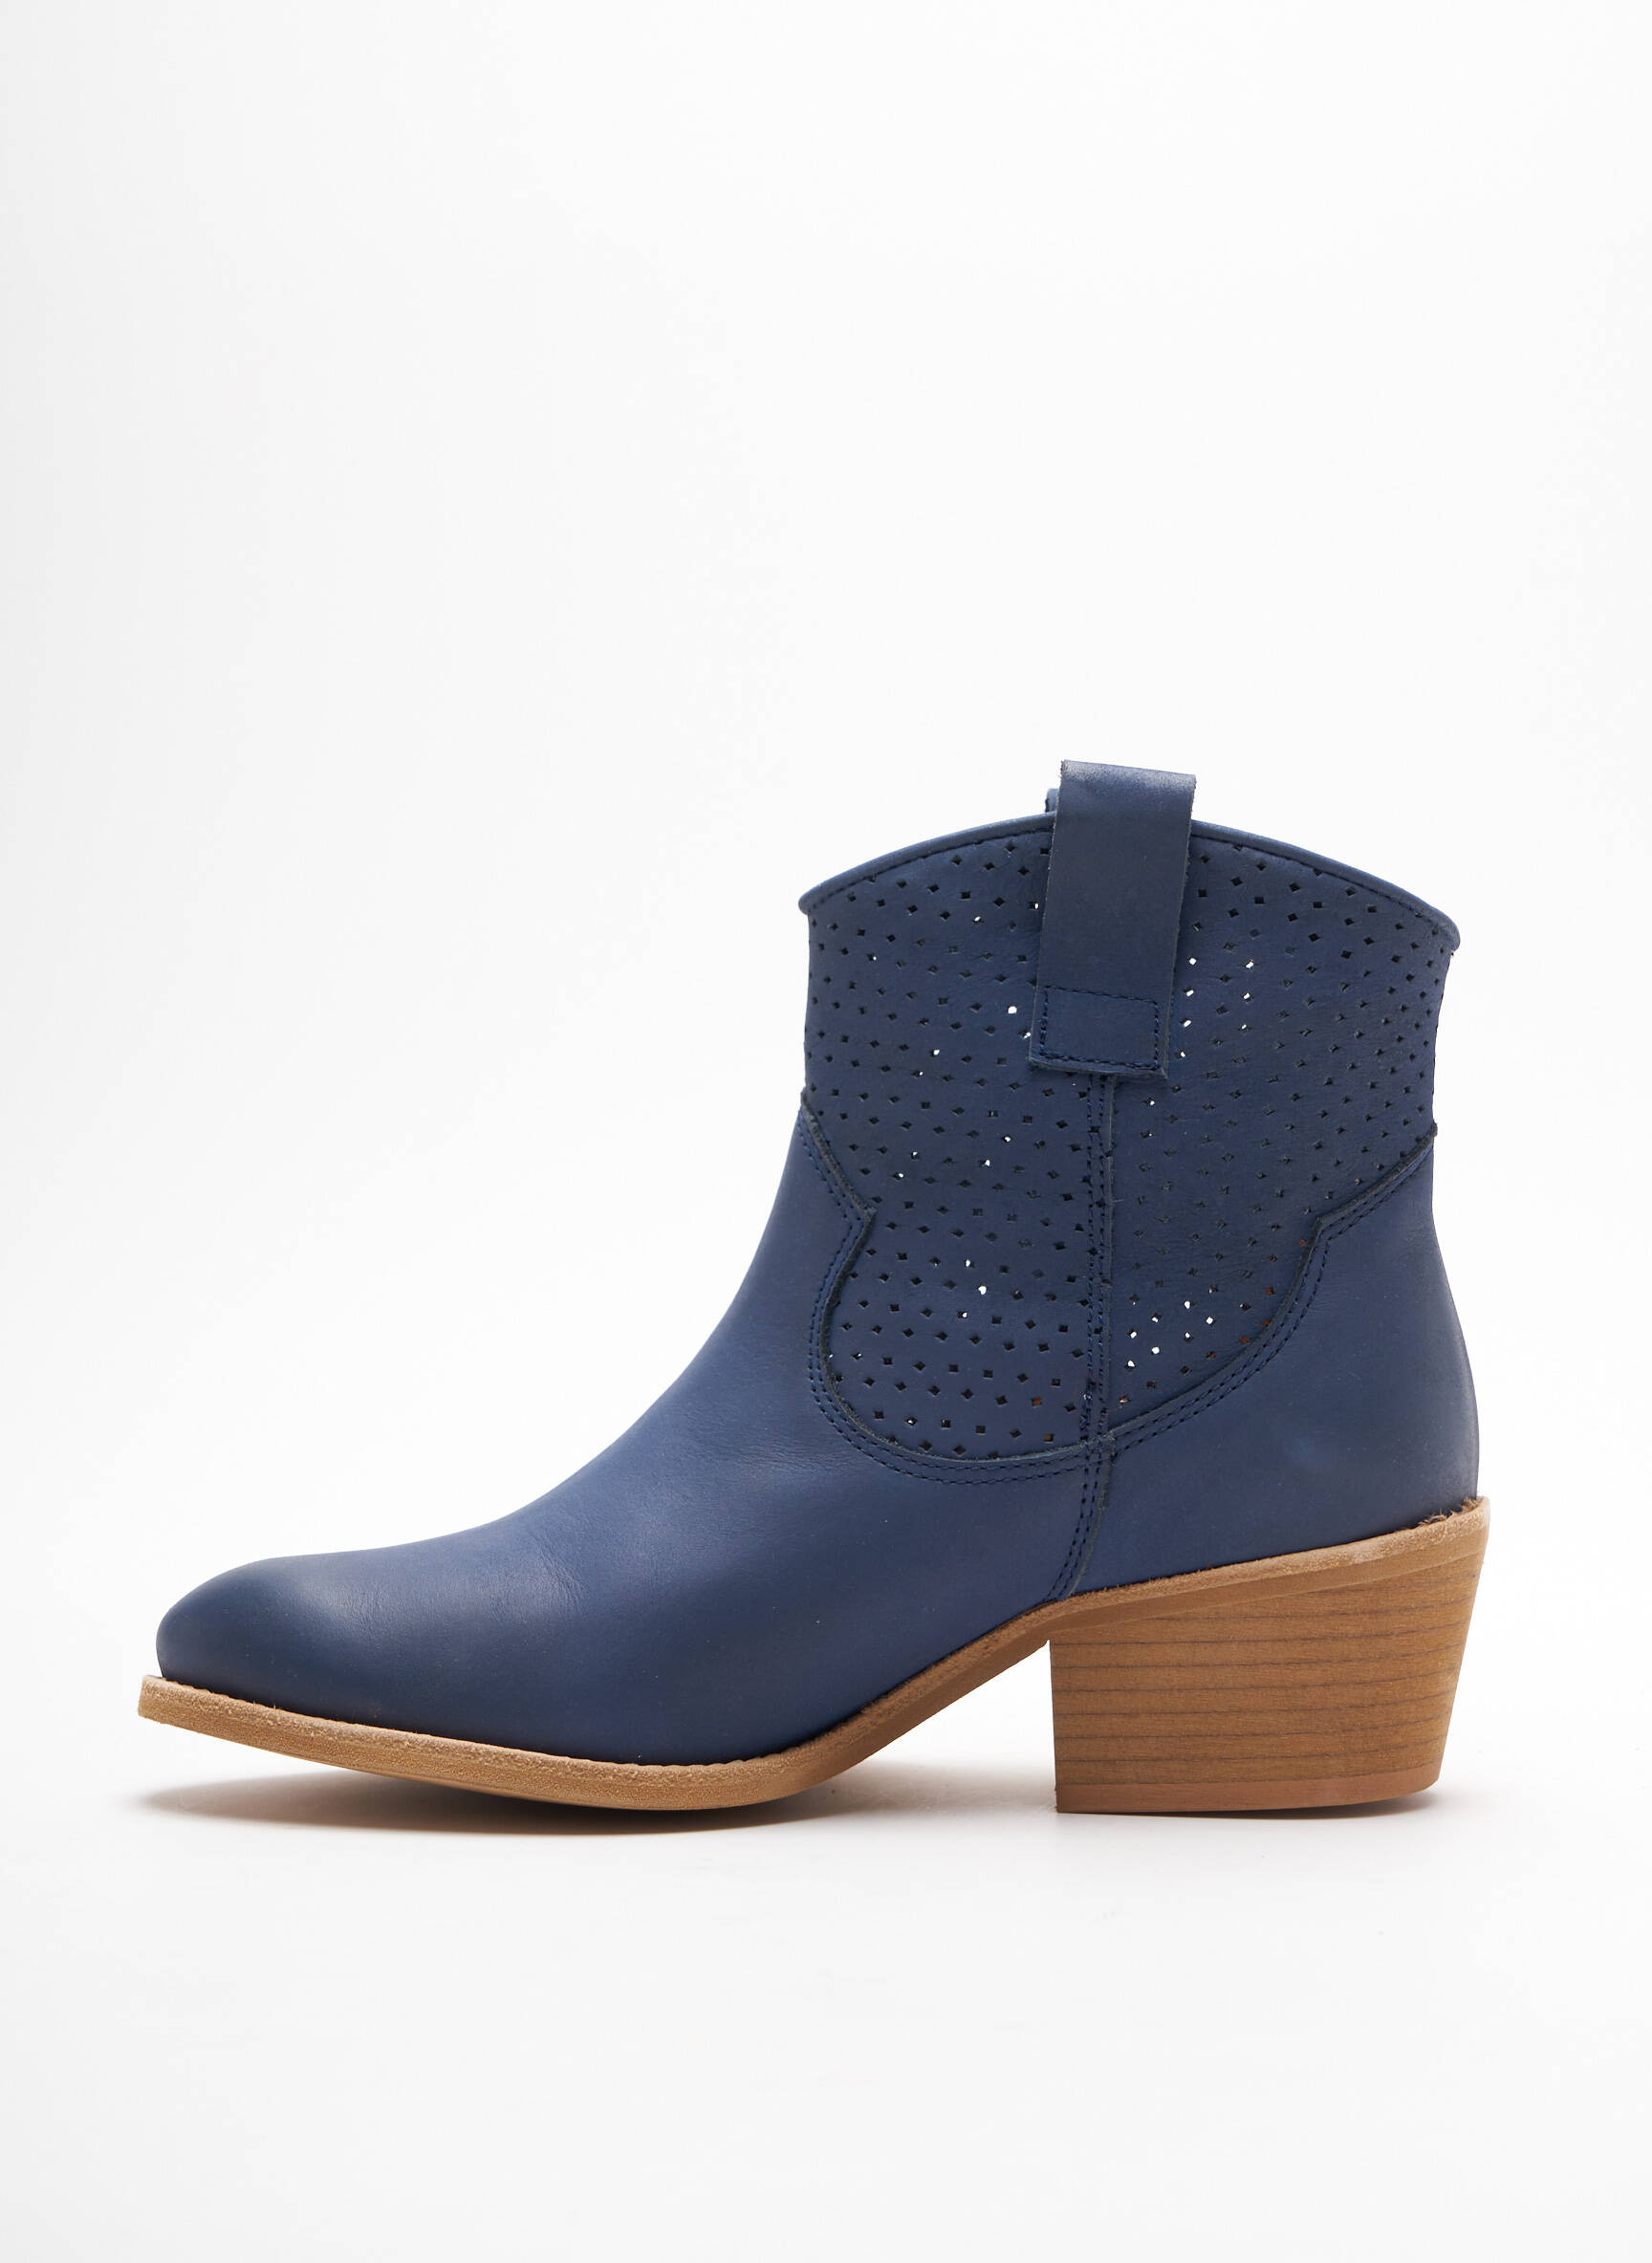 Mars 2023 : 4 nouveaux chaussons et “boots” pour femme !, Dernières infos